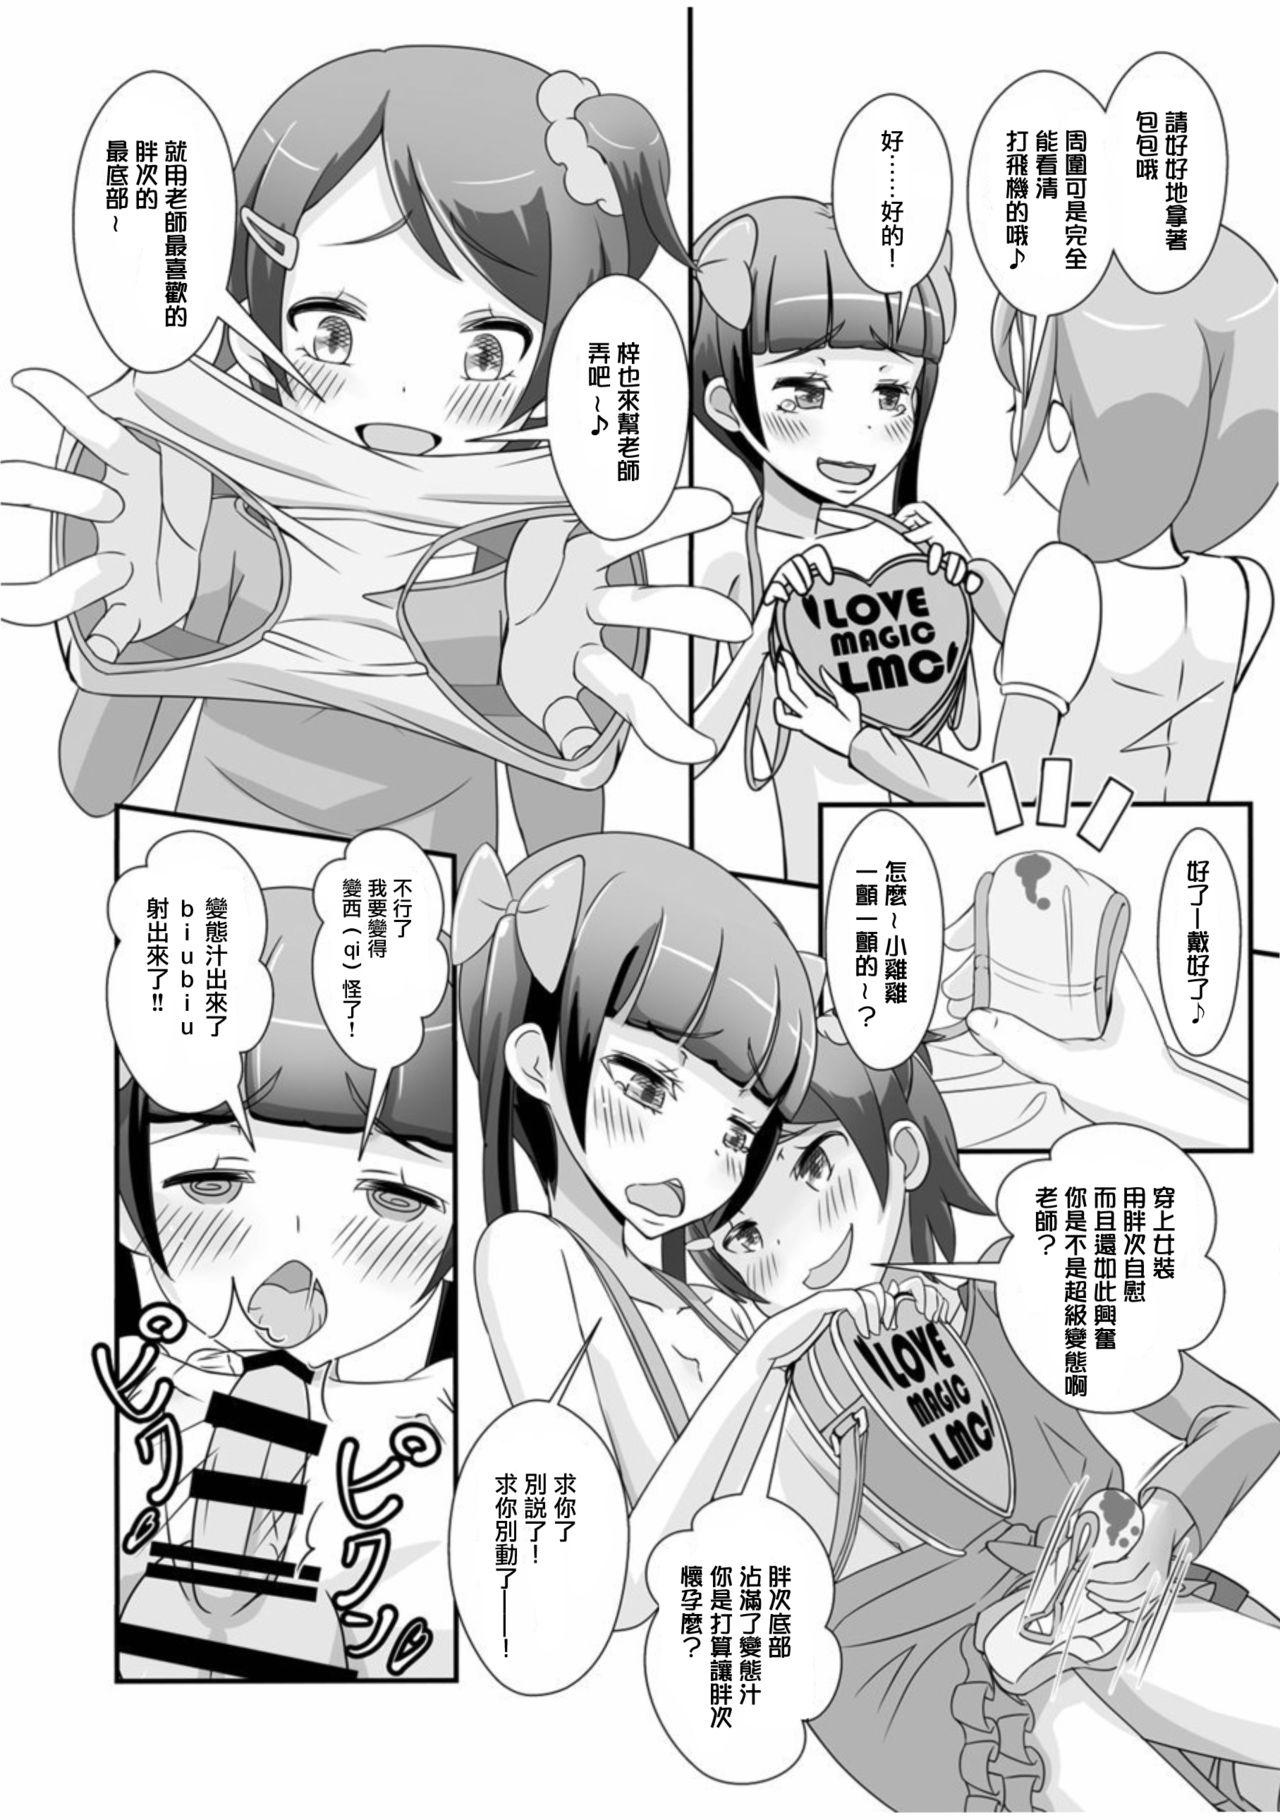 Mujer Sensei! Chotto "Jojisou" Shitemite! - Original Alone - Page 9